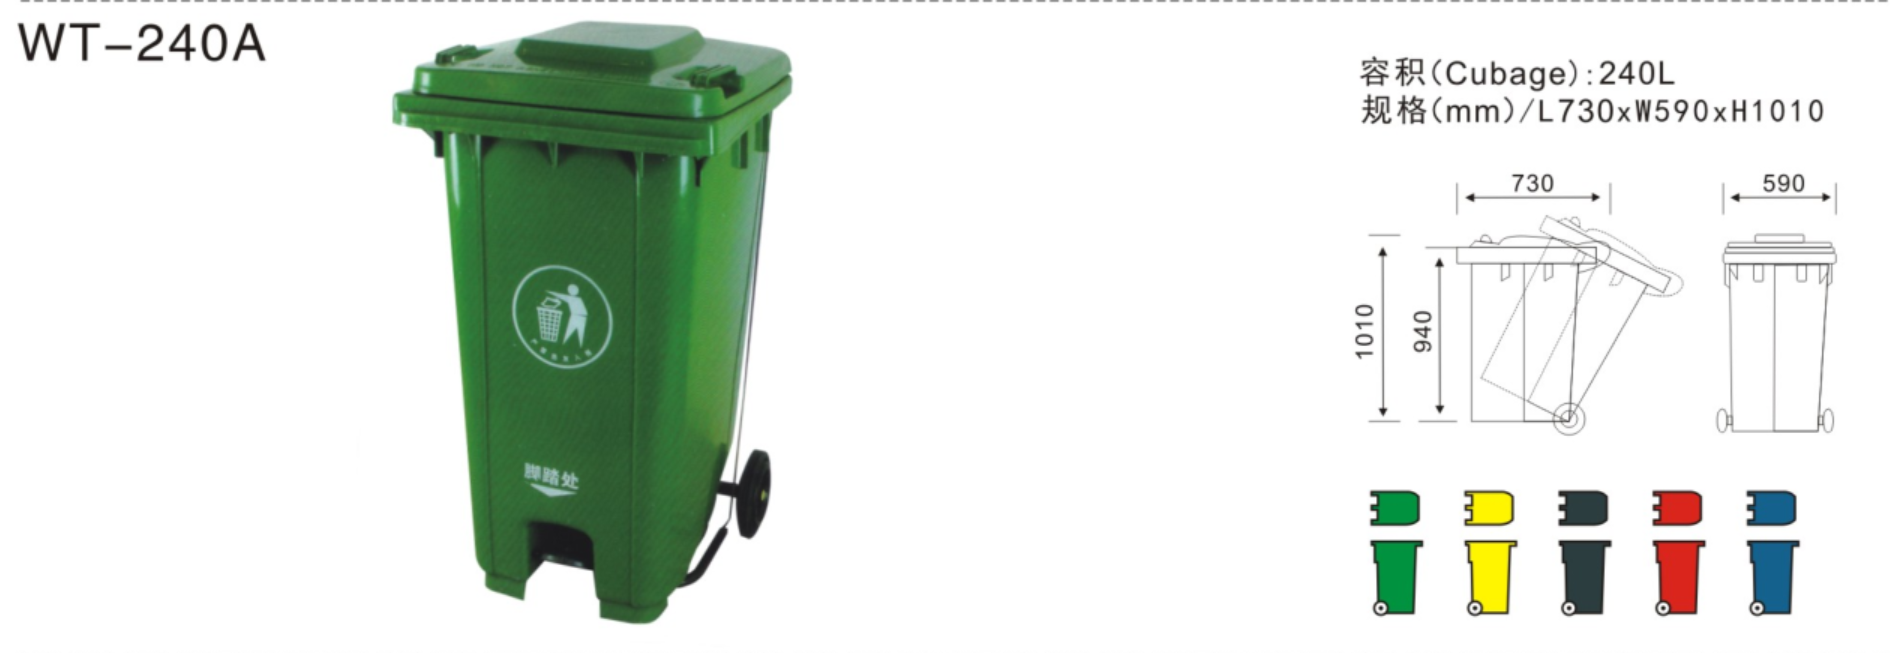 达州240L塑料垃圾桶